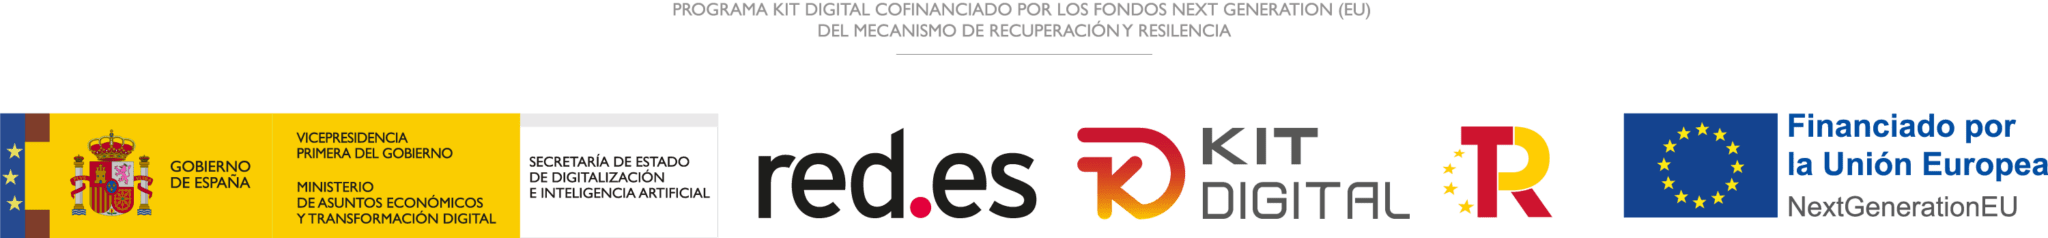 logos red.es